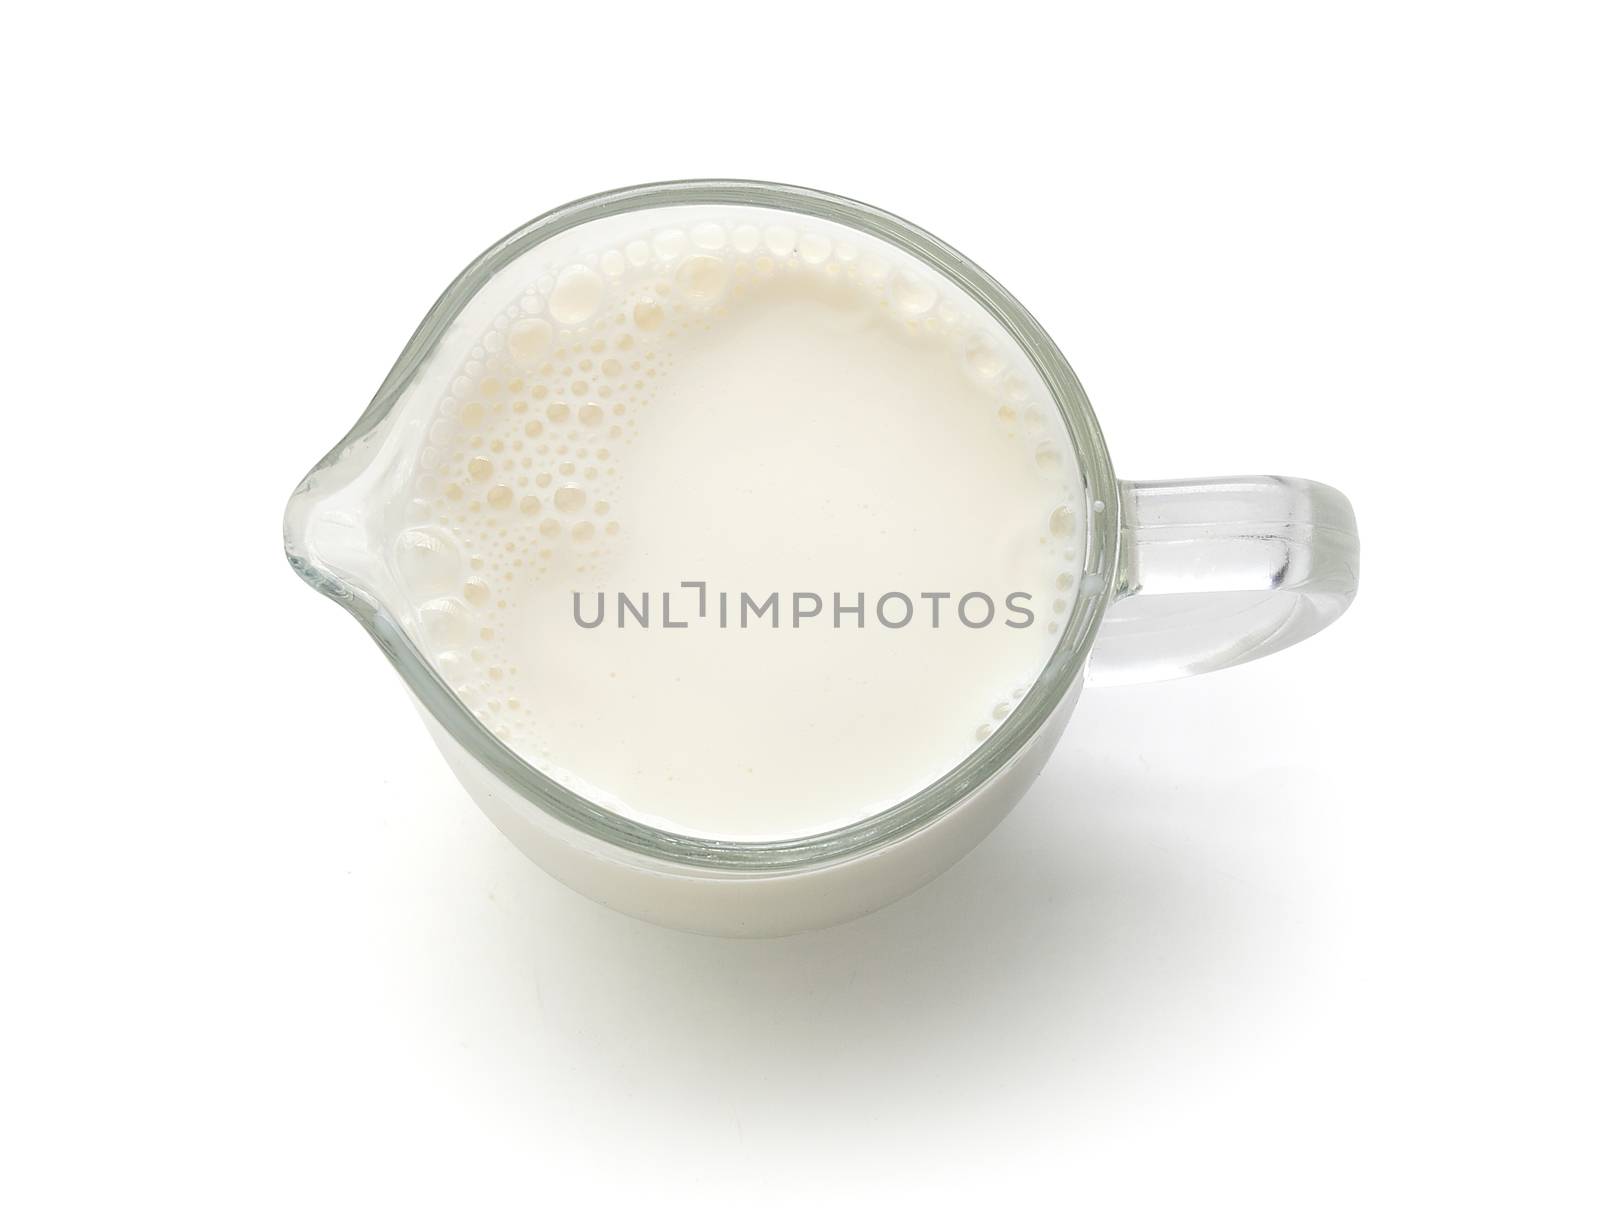 Milk jug with milk by Angorius